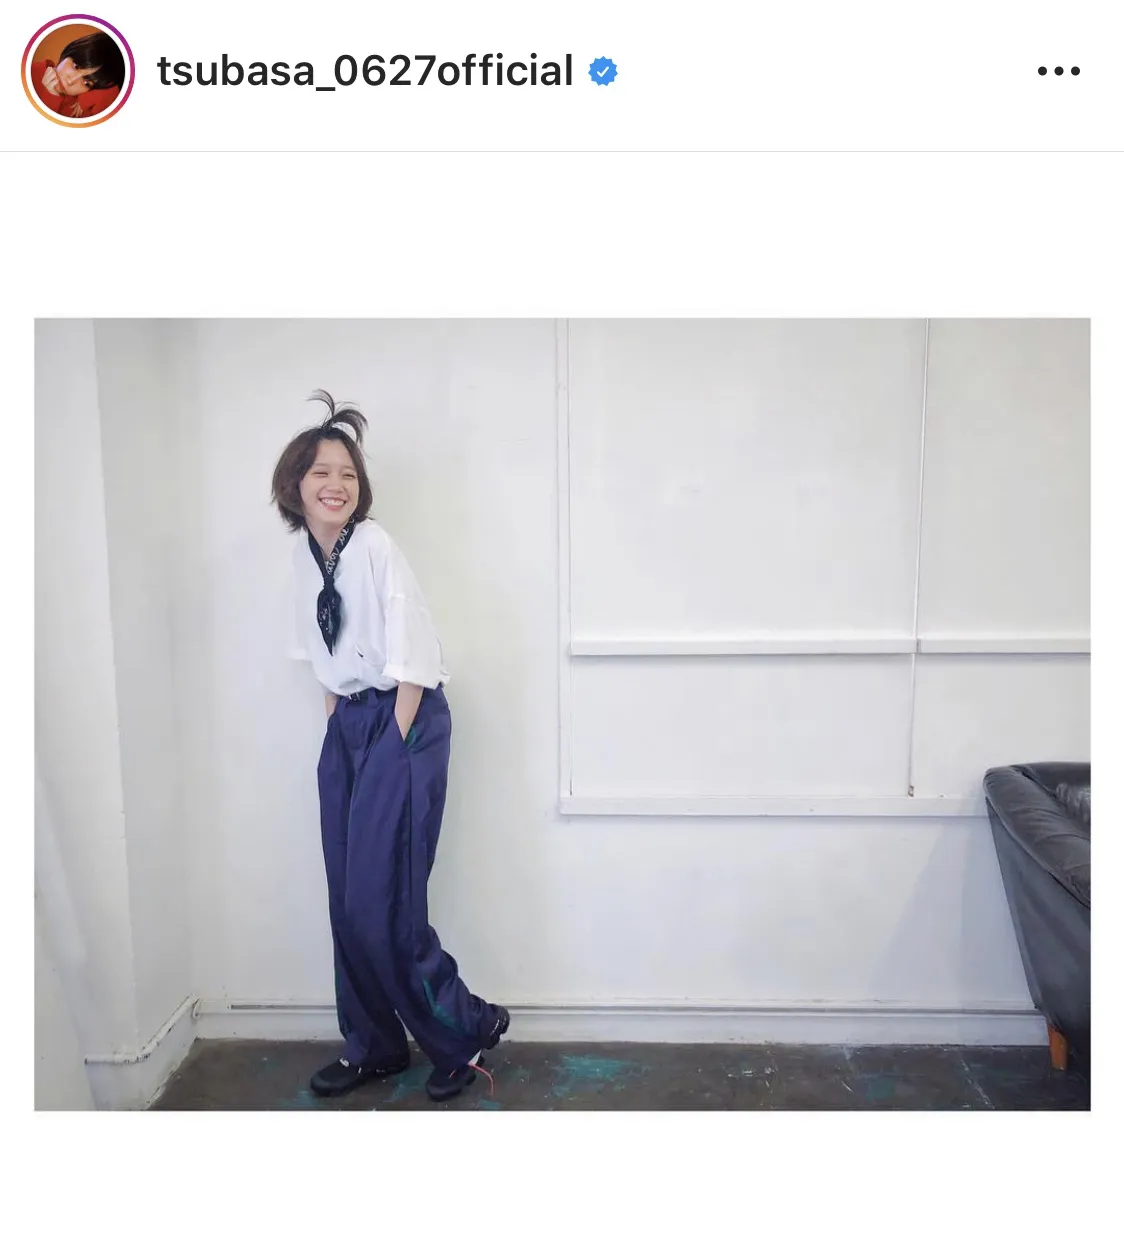 ※本田翼公式Instagram(tsubasa_0627official)より